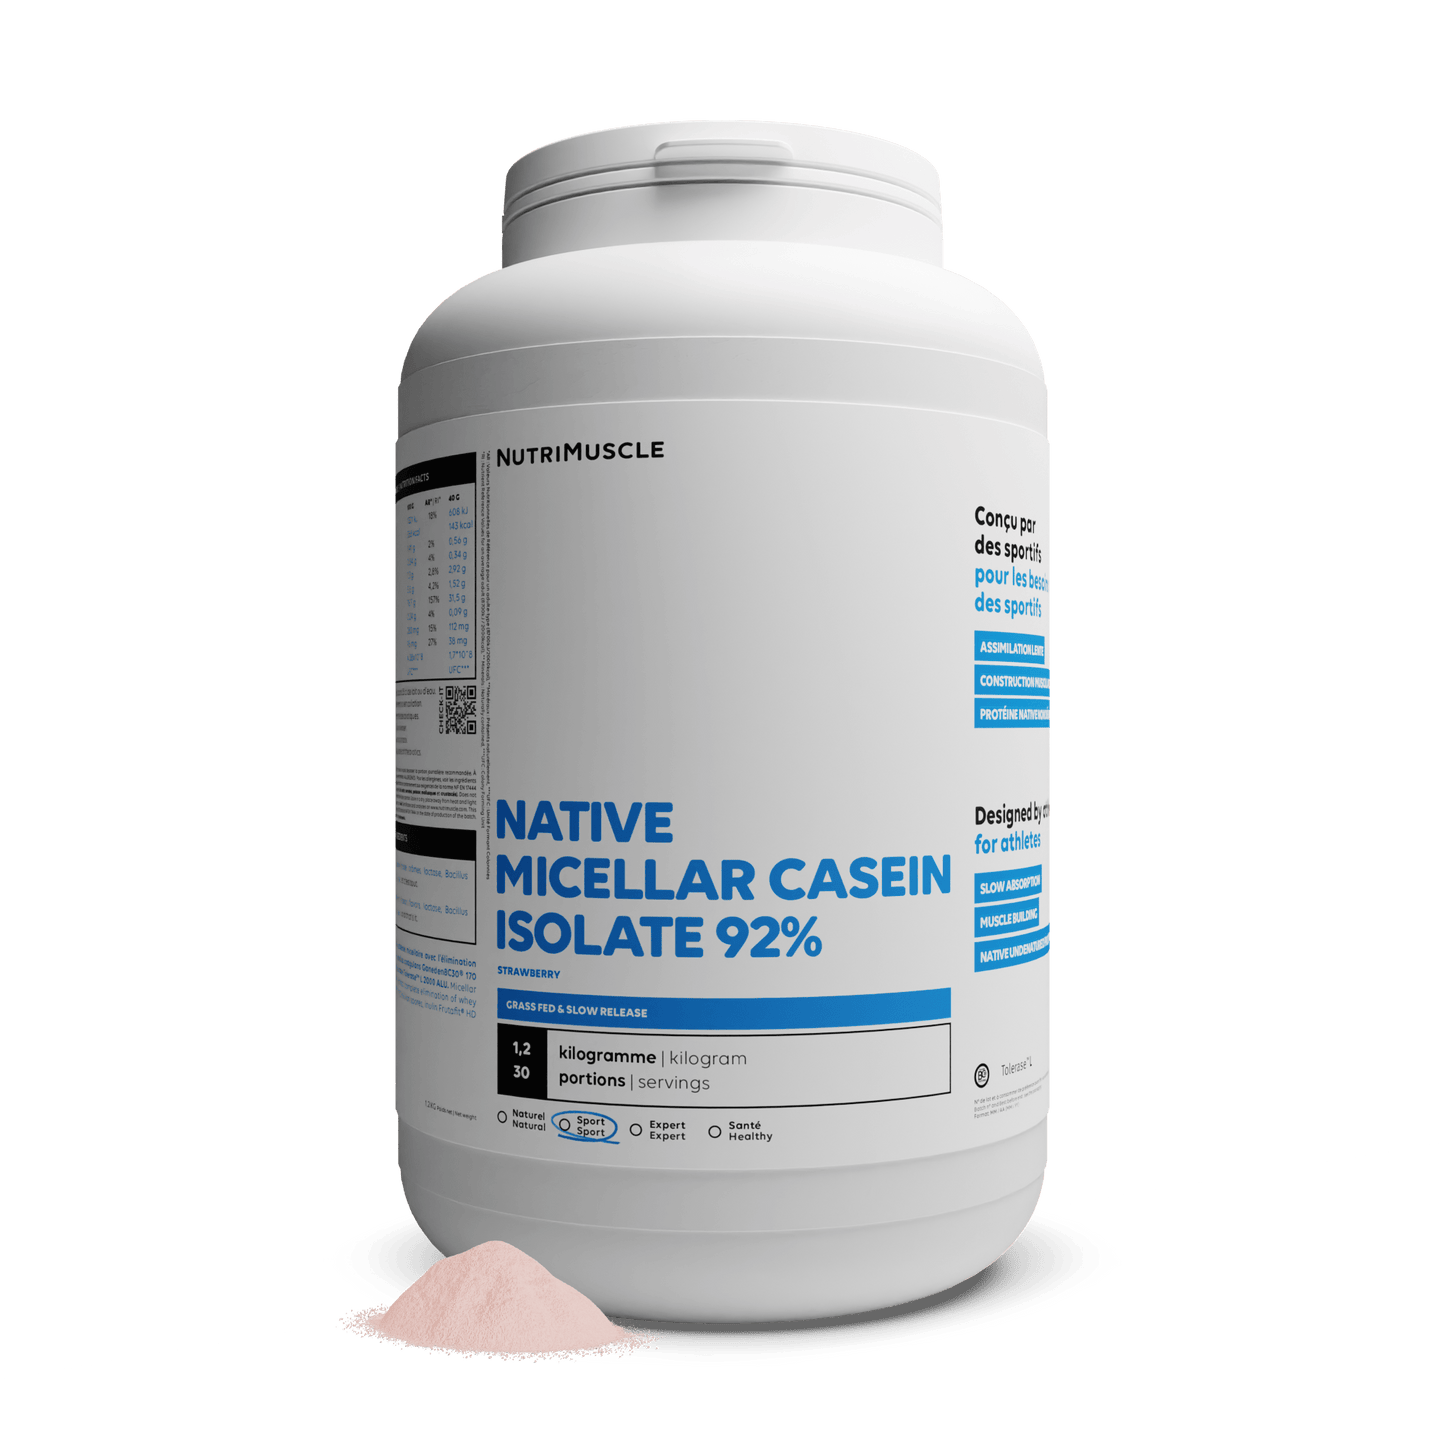 Nutrimuscle Protéines Fraise / 1.20 kg Isolat de caséine micellaire 92%